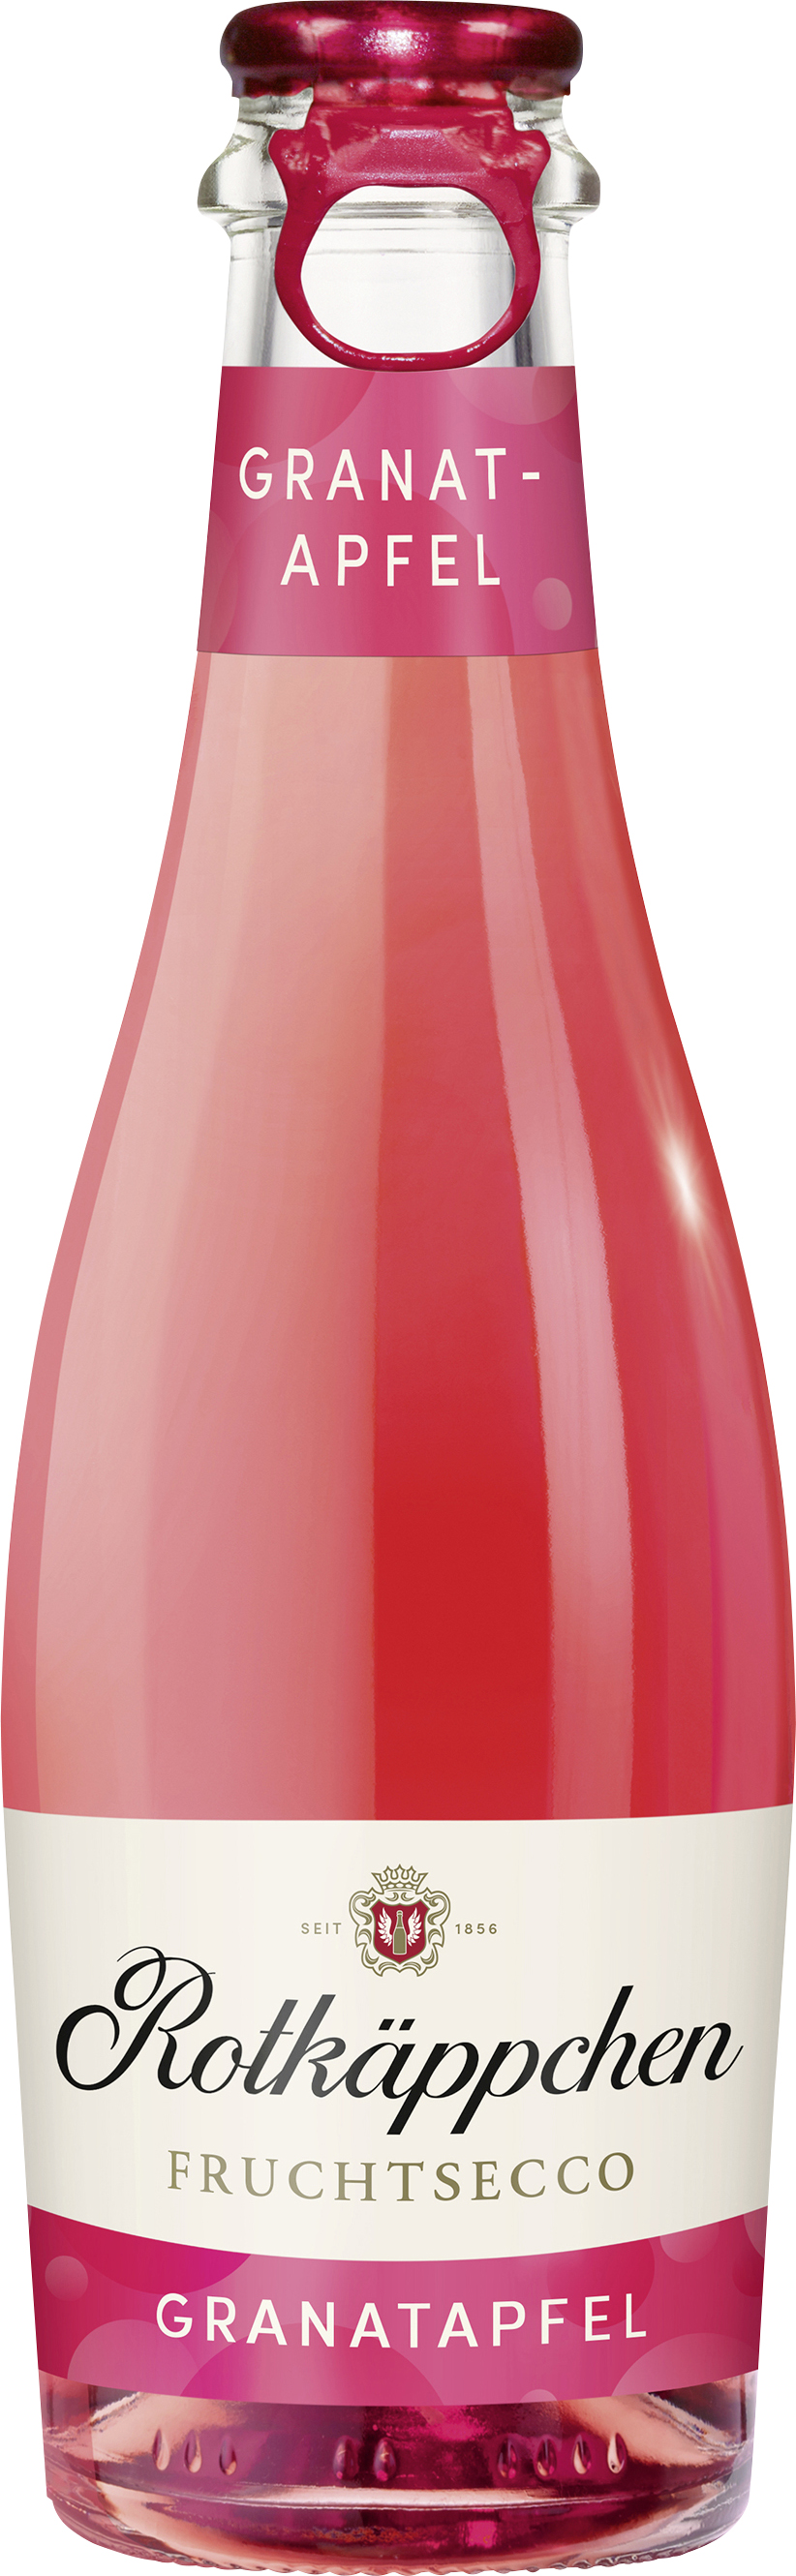 Rotkäppchen Fruchtsecco Granatapfel 0,2 | Schneekloth l